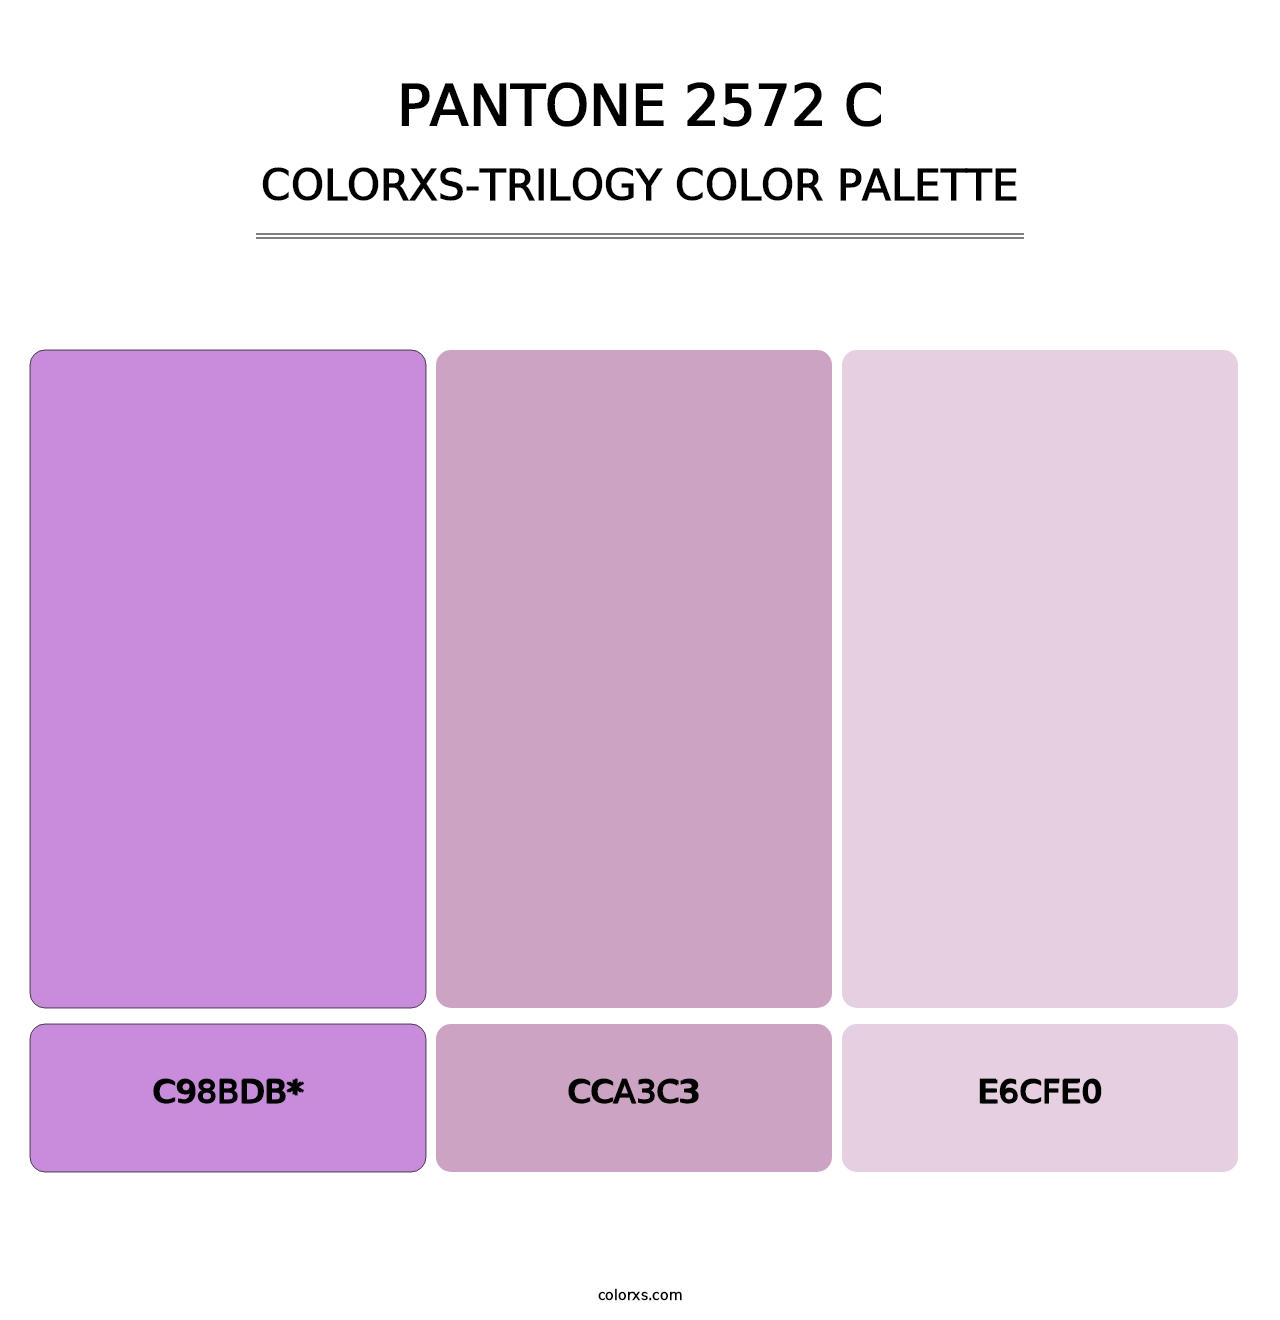 PANTONE 2572 C - Colorxs Trilogy Palette